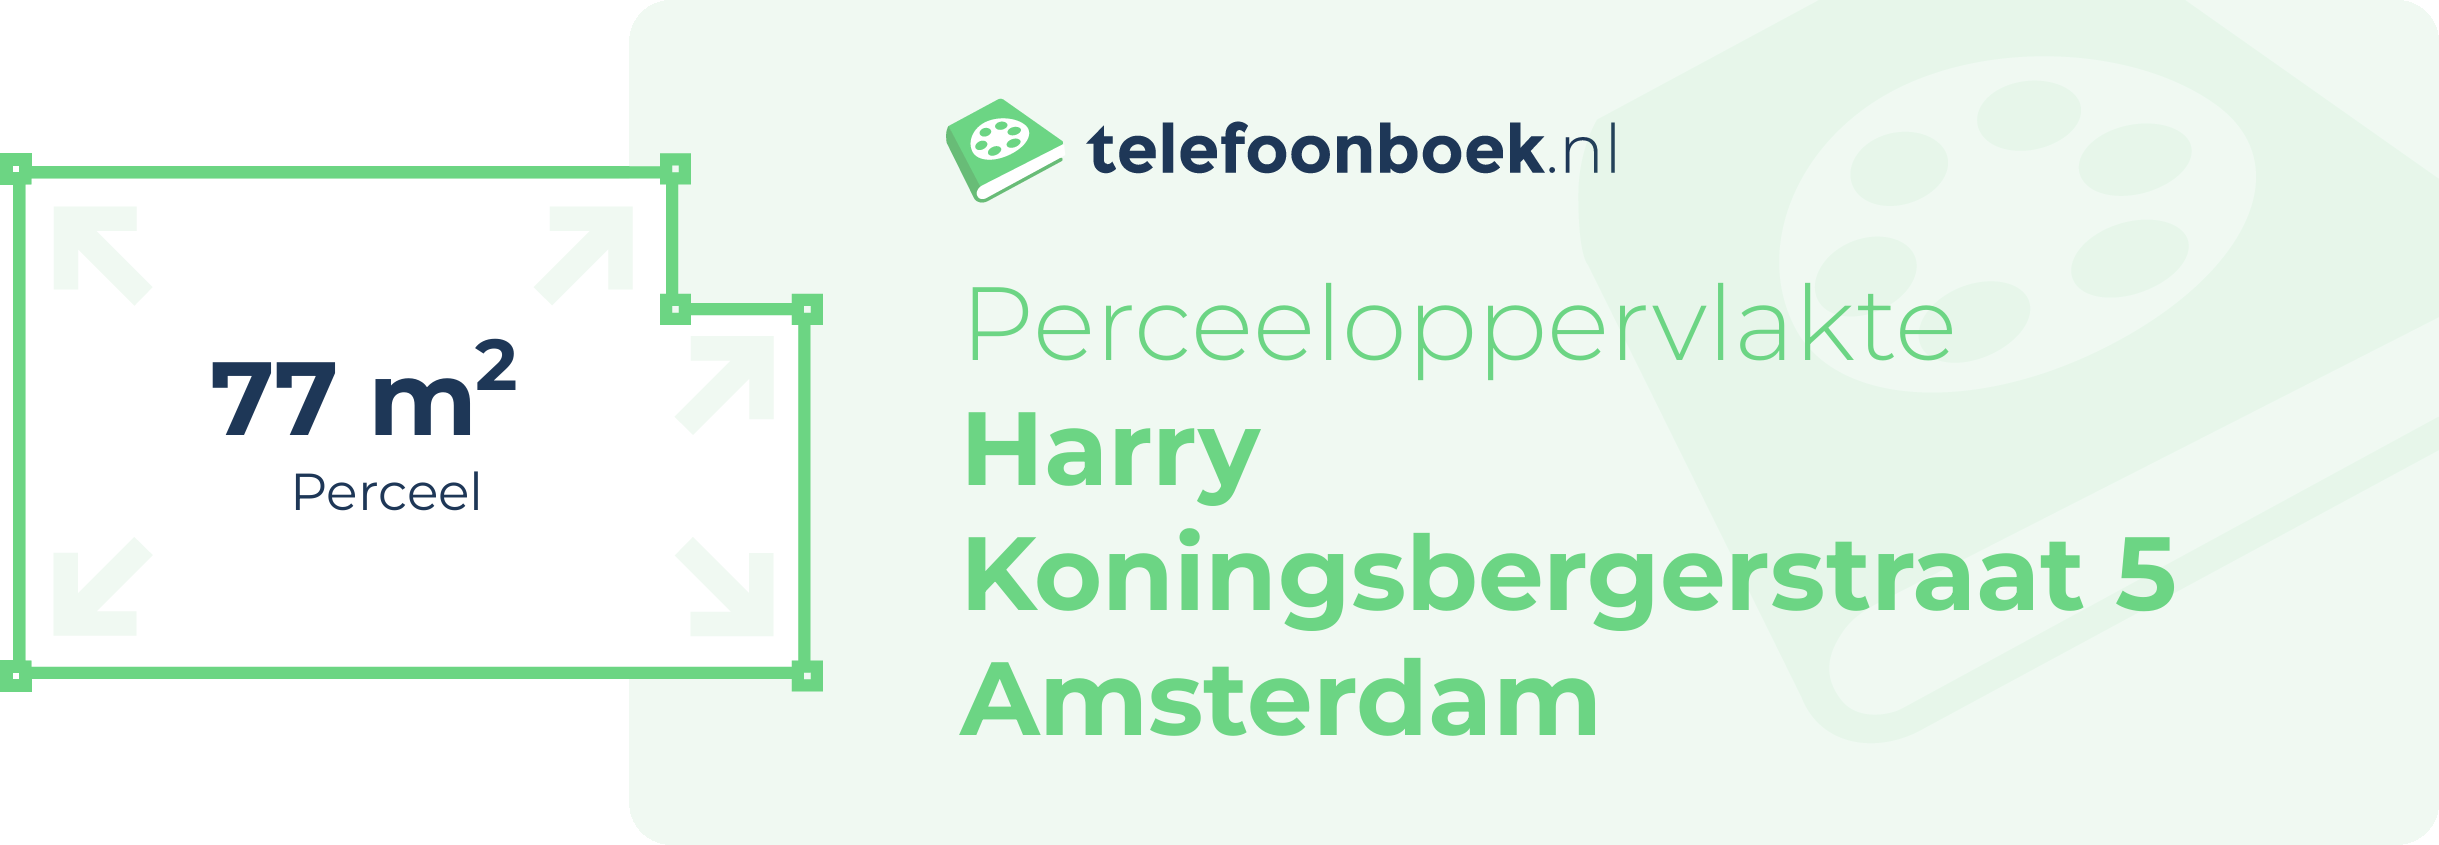 Perceeloppervlakte Harry Koningsbergerstraat 5 Amsterdam